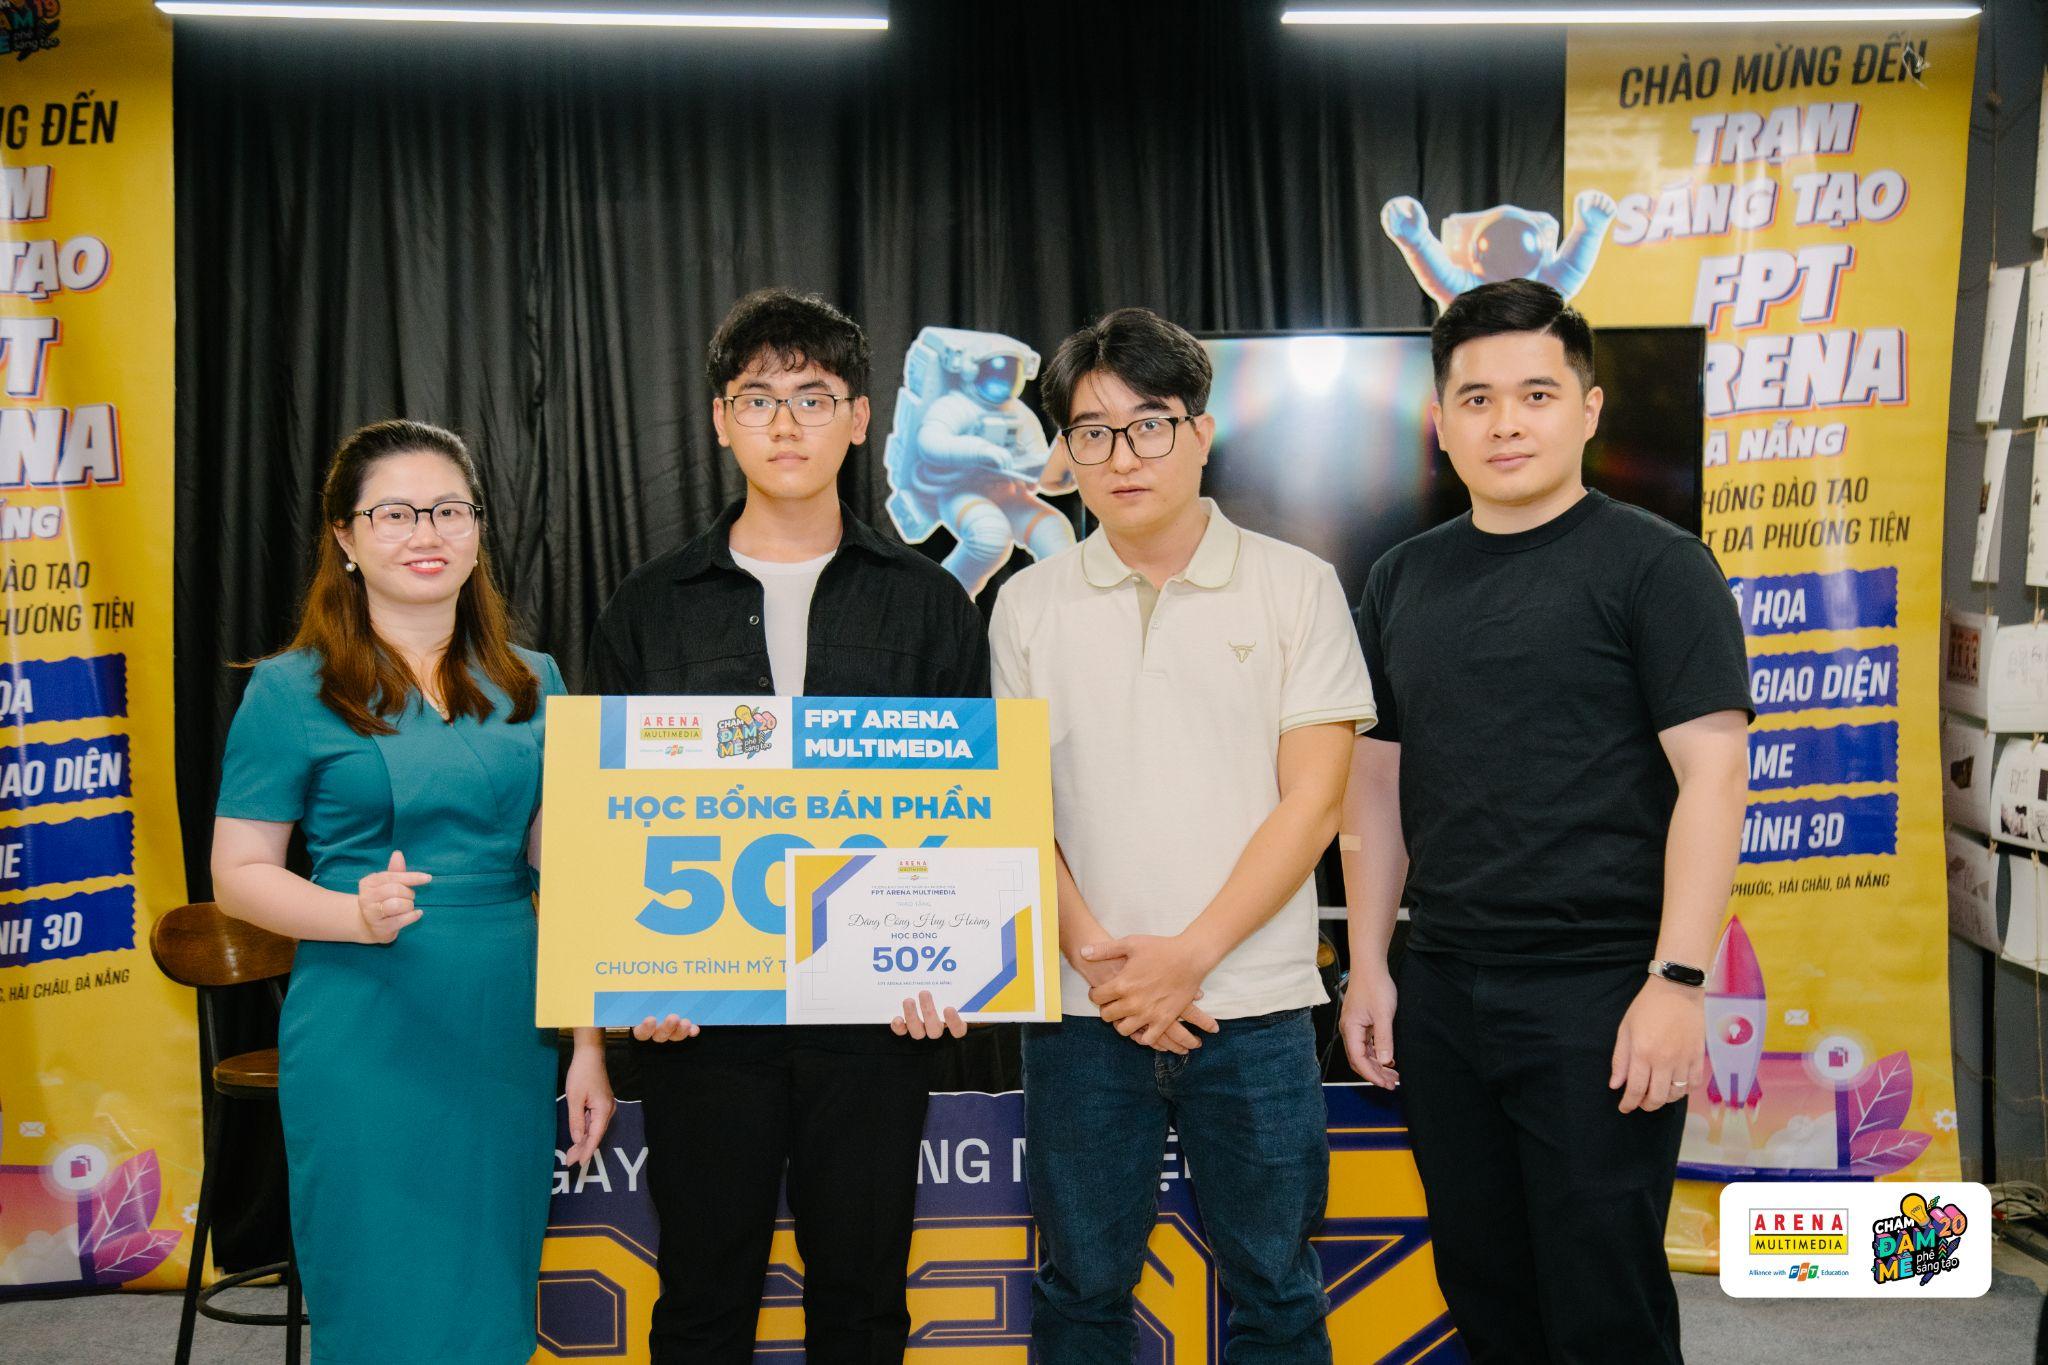 Bạn Đặng Công Huy Hoàng (học sinh lớp 12 trường THPT Nguyễn Trãi Đà Nẵng) nhận học bổng 50% giá trị học phí  tại FPT Arena Multimedia 